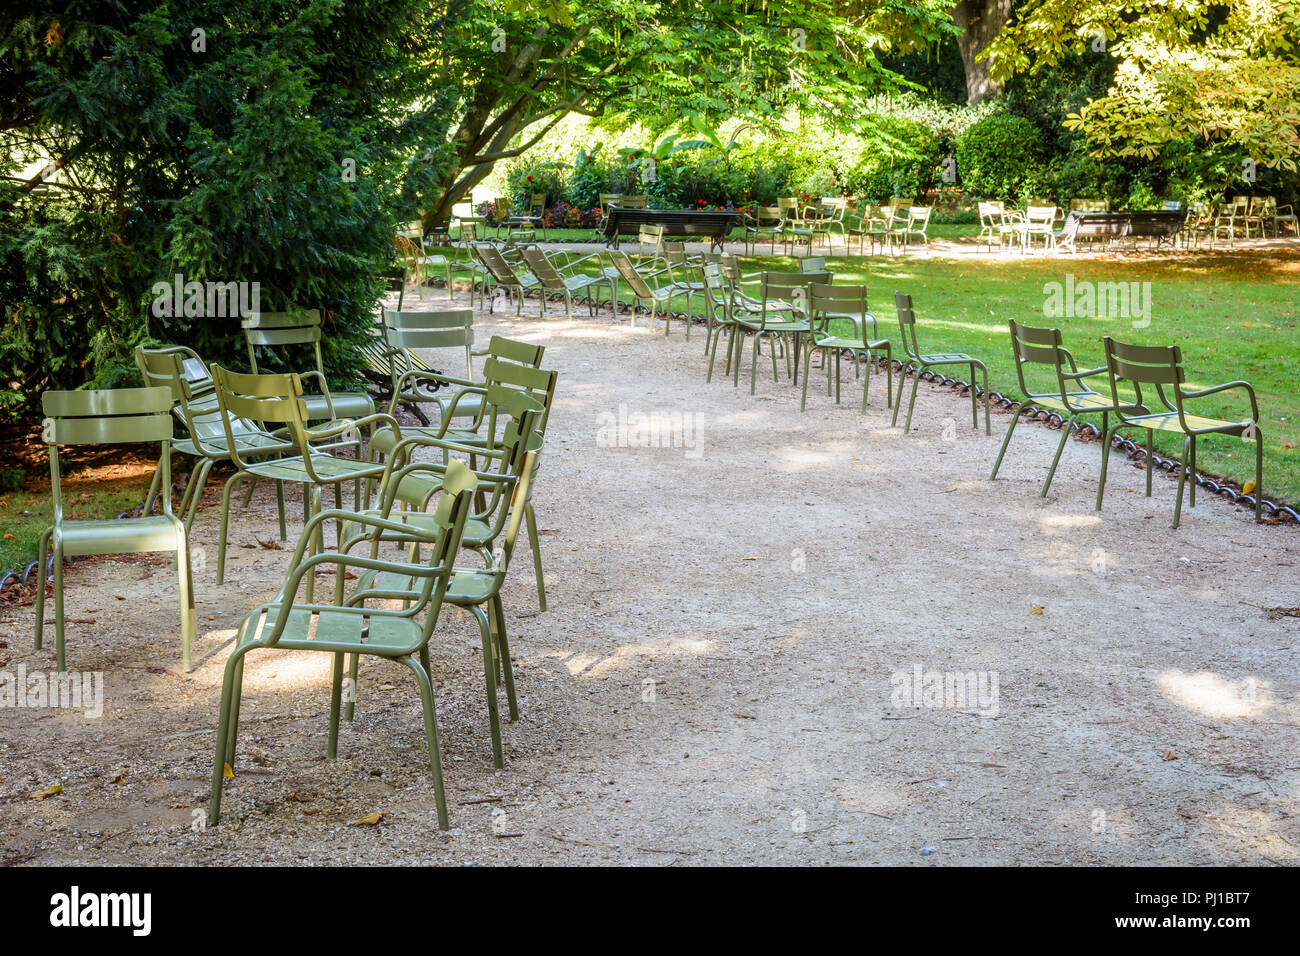 Grüne typischen Metall Gartenmöbel neben einer Gasse der Jardin du  Luxembourg in Paris, Frankreich verstreut, die von einem sonnigen  Sommermorgen Stockfotografie - Alamy